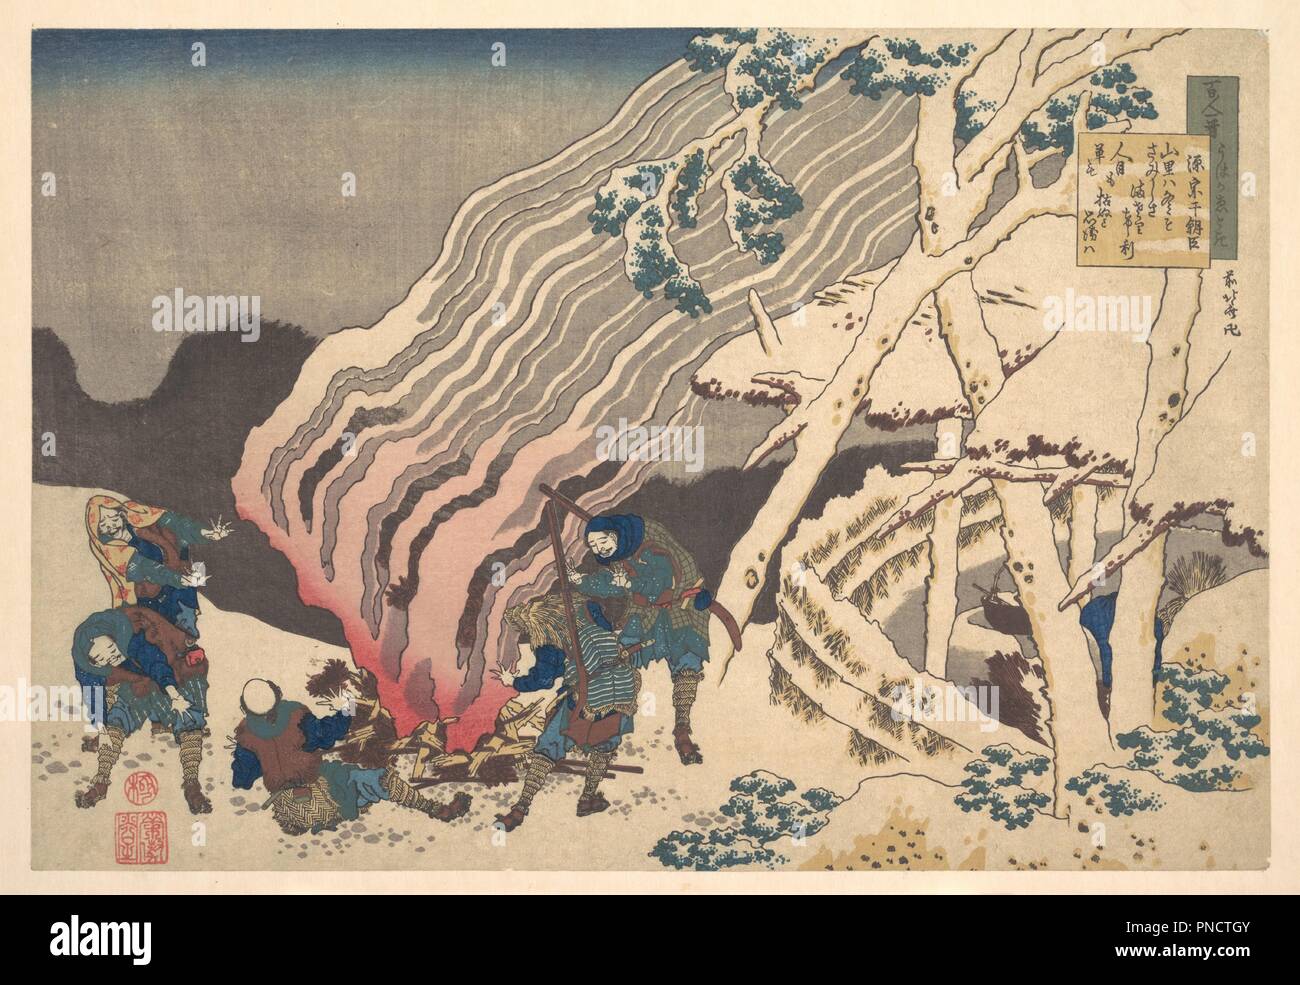 Poème de Minamoto no Muneyuki Ason, de la série d'une centaine de poèmes expliqué par l'infirmière (Hyakunin isshu uba ga etoki). Artiste : Katsushika Hokusai (Japonais, Tokyo (EDO) 1760-1849 Tokyo (EDO)). Culture : le Japon. Dimensions : hors tout : 9 7/8 x 14 1/2 in. (25,1 x 36,8 cm). Date : ca. 1835. Cette impression est d'Hokusai's dernière série d'impression importante, laissé incomplet au moment de sa mort. Cent Poèmes par cent poètes est une anthologie de poèmes waka classique. Sur l'étiquette à l'angle supérieur droit, un poème par Minamoto Muneyuki (d. 939) est inscrit : Dans un hameau de montagne l'hiver la solitude Banque D'Images